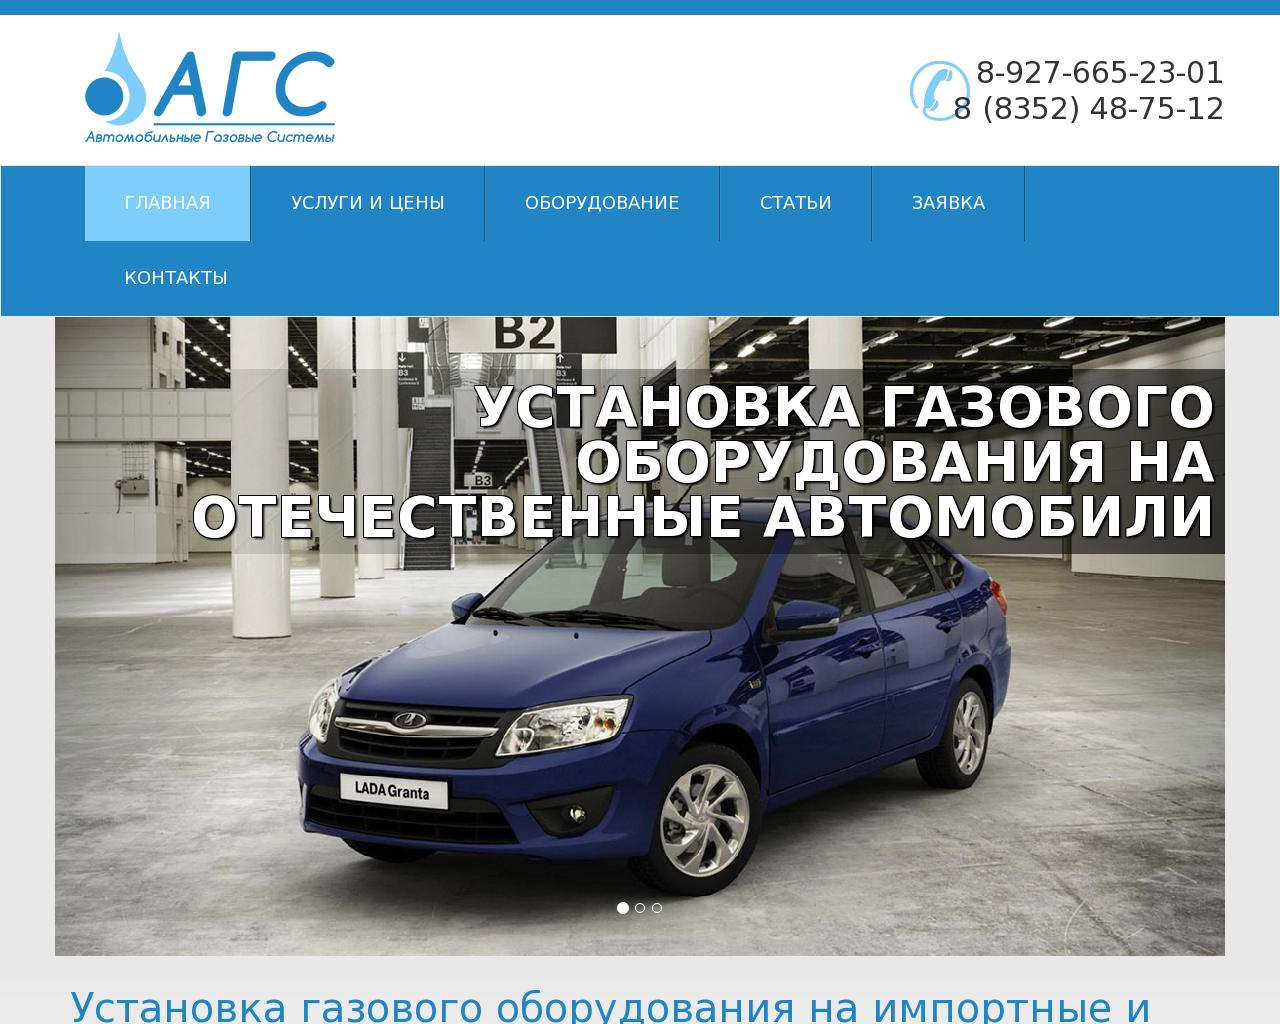 Изображение сайта autogas21.ru в разрешении 1280x1024